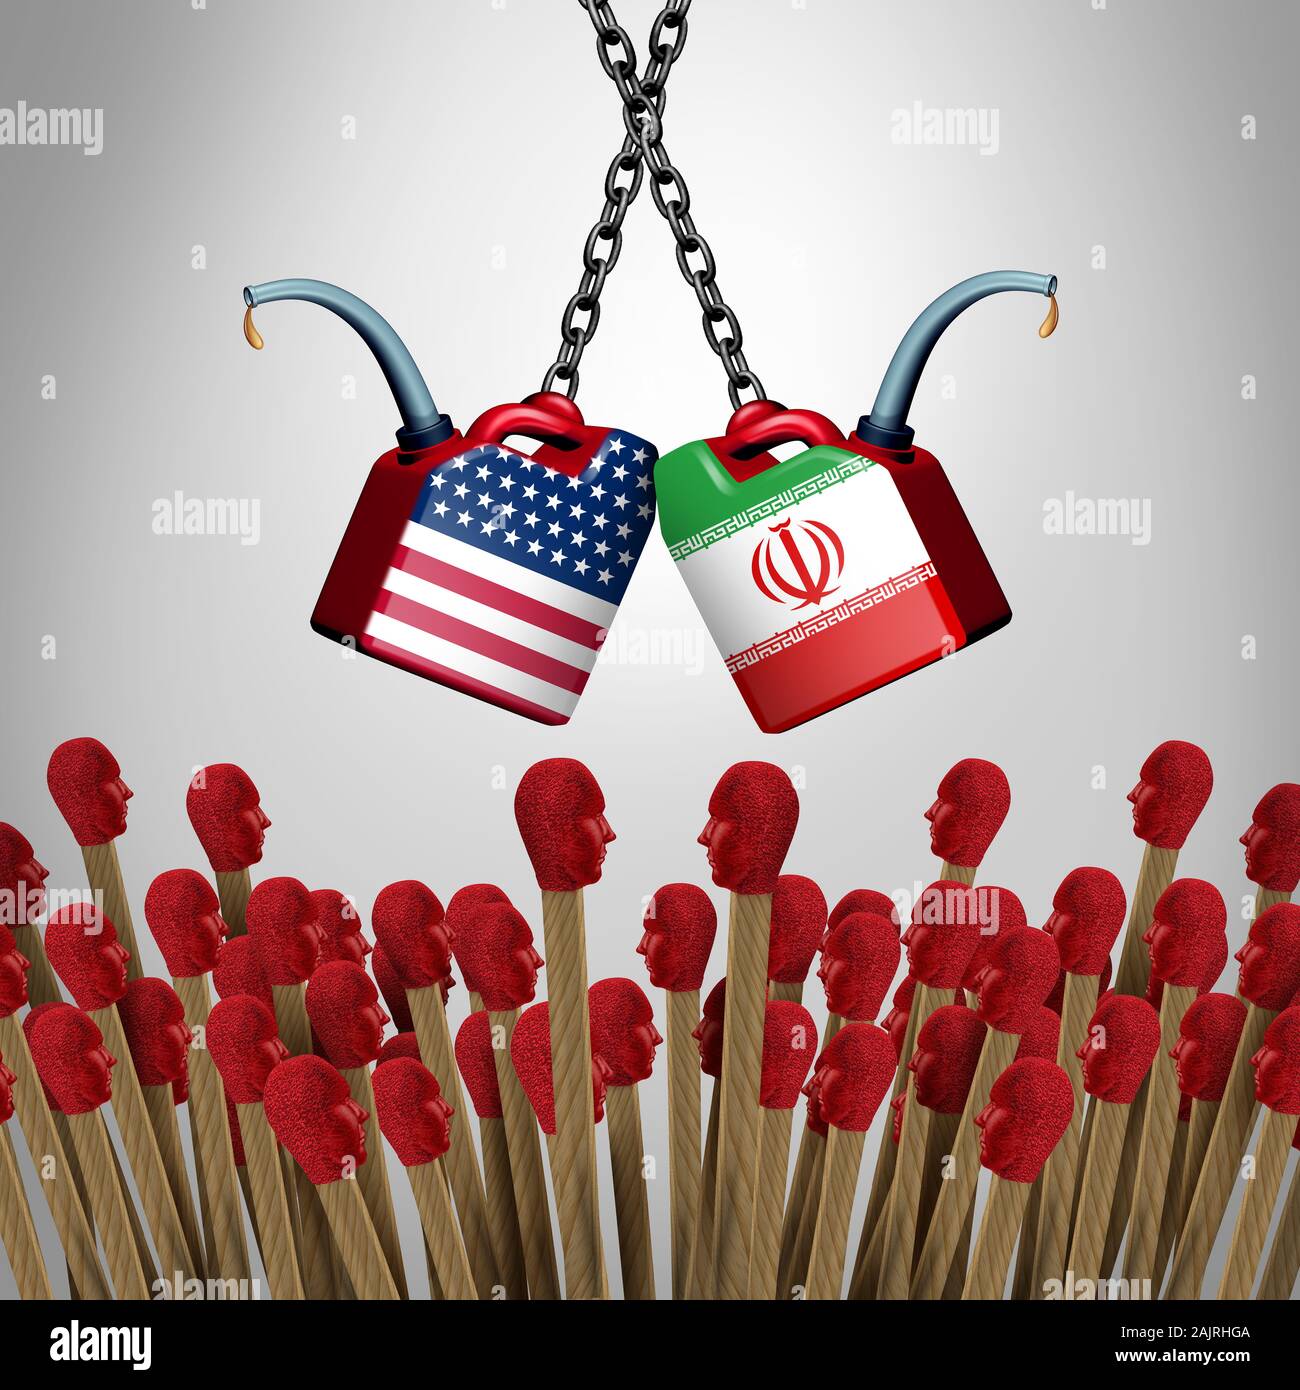 Iran Stati Uniti volitile crisi e American iraniano rischio di guerra come militari USA GUERRA tensione in Medio Oriente come una minaccia imminente concetto. Foto Stock